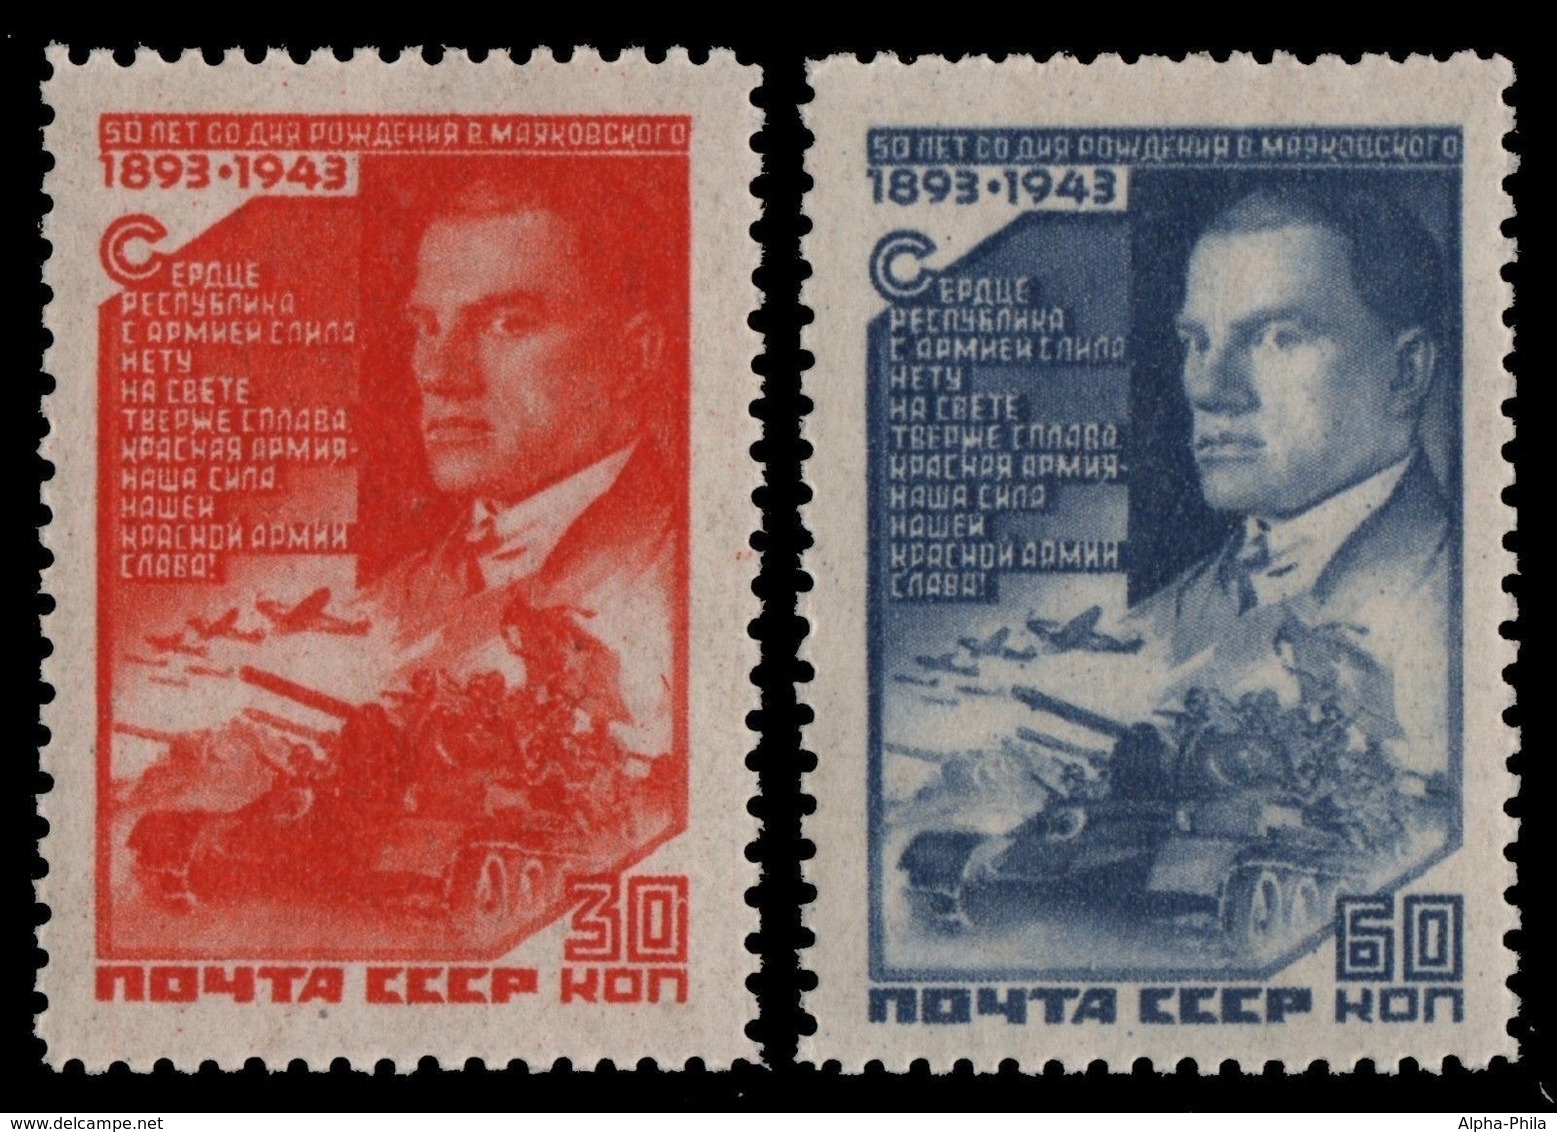 Russia / Sowjetunion 1943 - Mi-Nr. 881-882 ** - MNH - Majakowskij - Ungebraucht